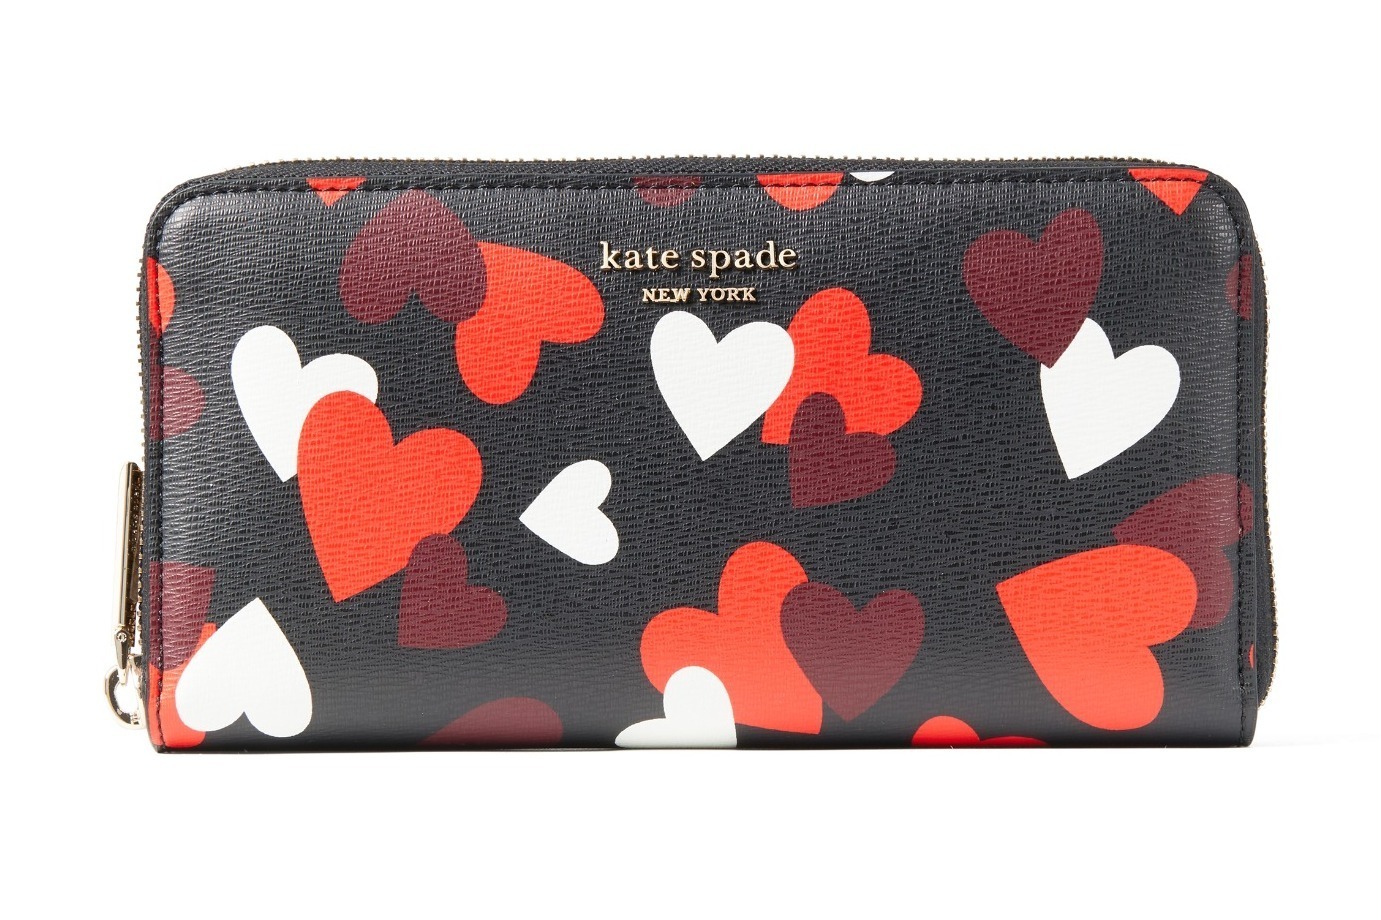 ケイト・スペード2021年バレンタインギフト、“ハート”モチーフの財布